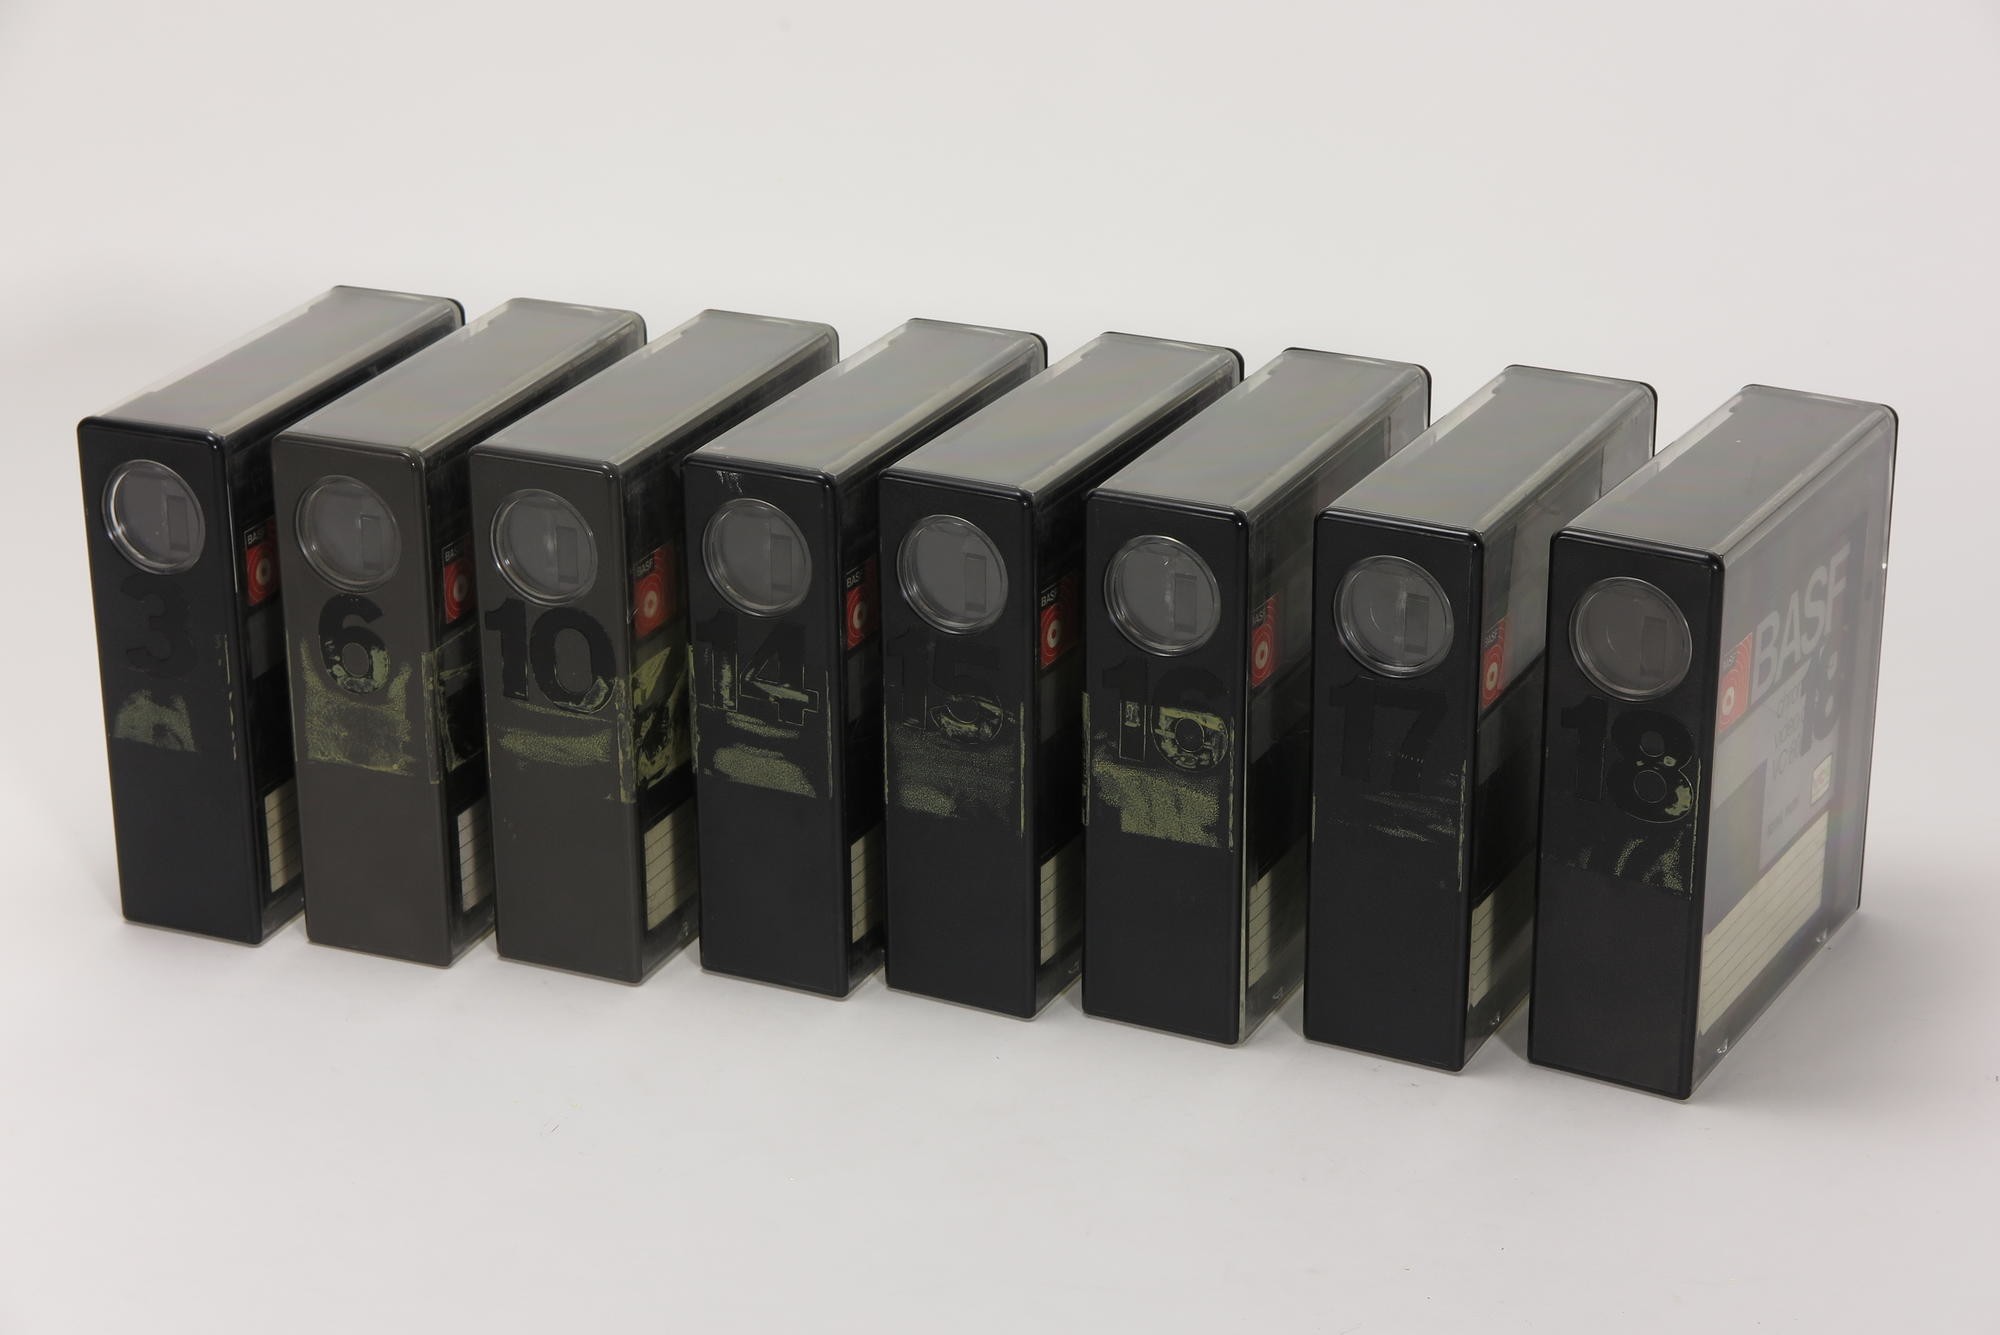 8 x BASF VC 60/130 Videokassetten, Zubehör für Videorecorder Telefunken VR 40 (Stiftung Deutsches Technikmuseum Berlin CC0)